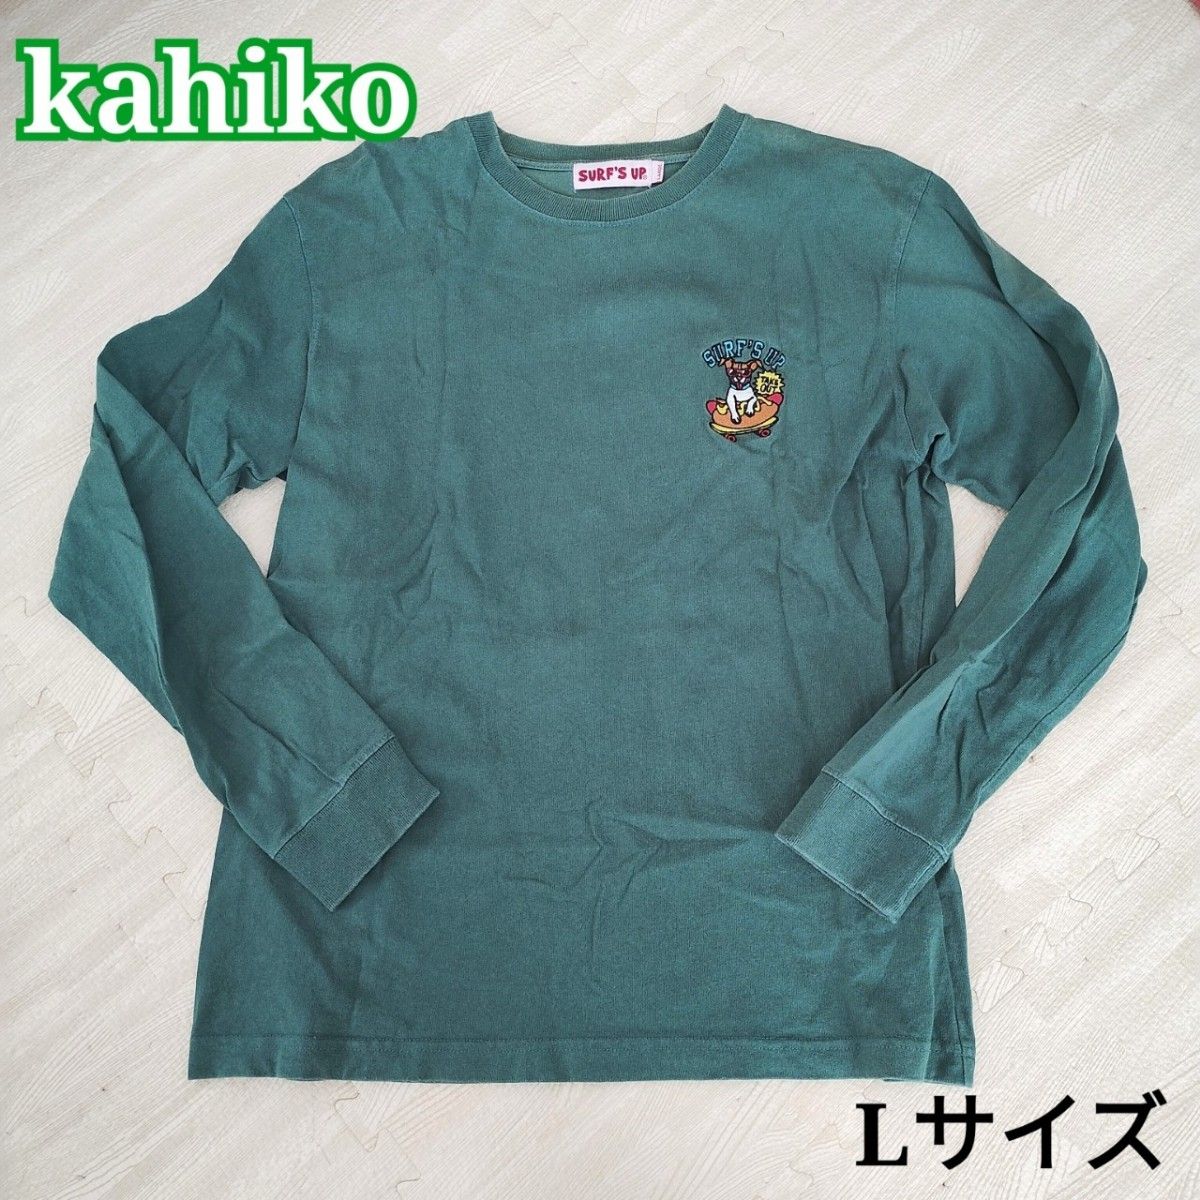 kahiko SURF'S UP 刺繍ワンポイント 犬ロゴ ロンT 緑グリーン